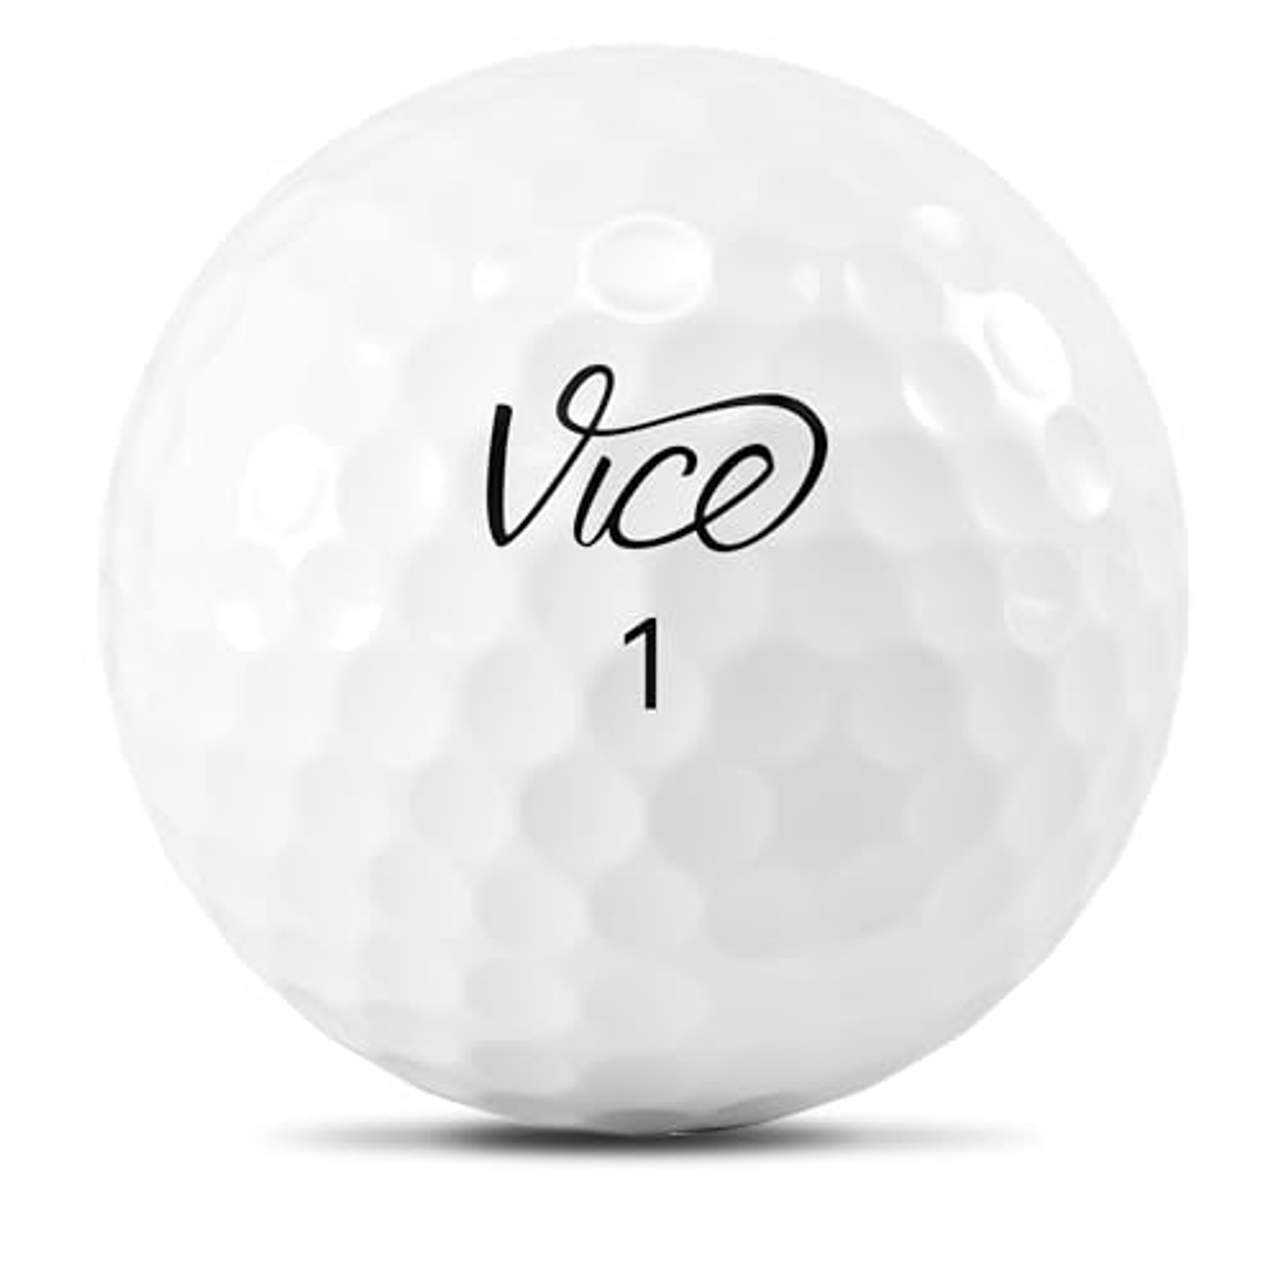 Vice Golf Pro 